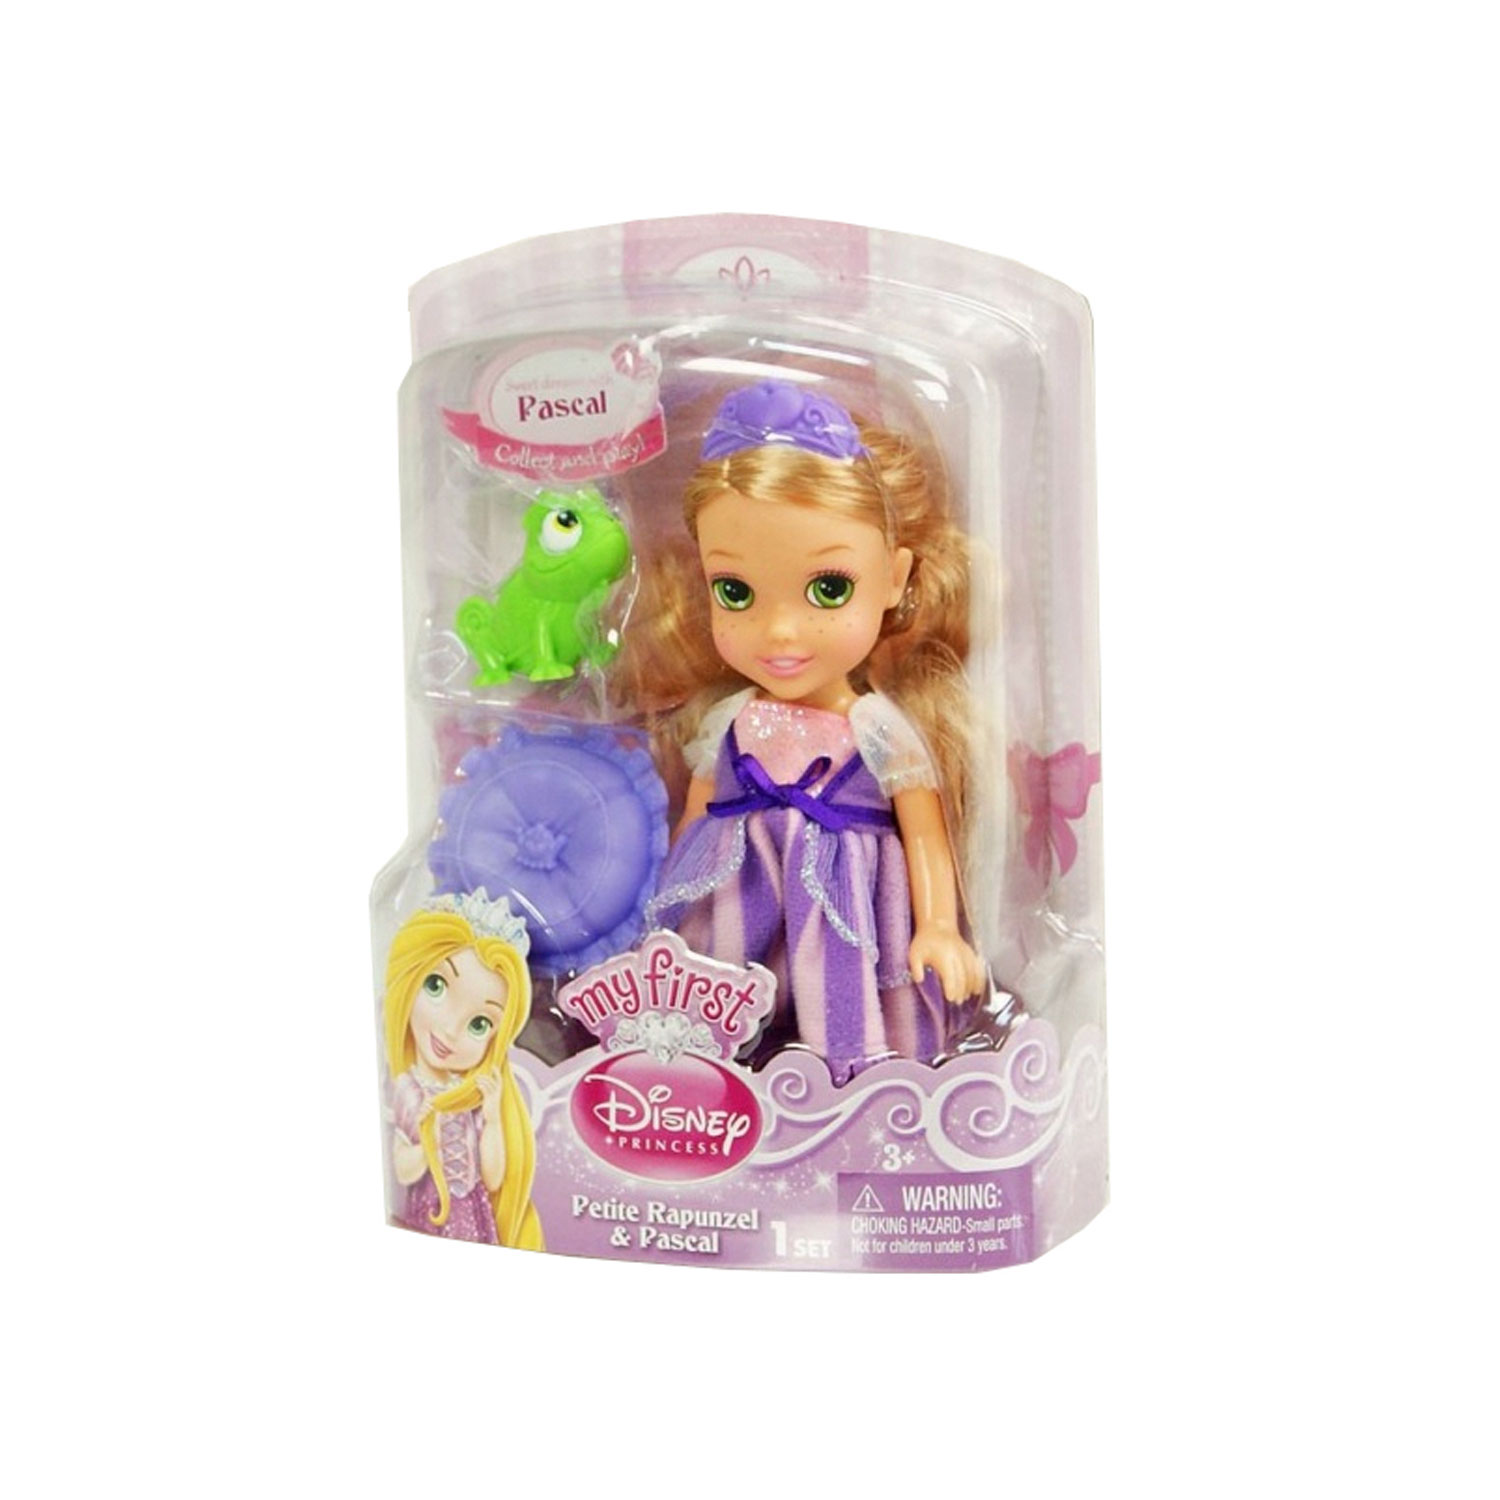 Принцесса малышка s класса. Мини куклы принцессы Дисней Рапунцель. Кукла Jakks Pacific Disney Princess принцесса Рапунцель, 37.5 см, 99541. Магнит кукла Дисней мини принцессы набор. Магнит кукла Рапунцель.